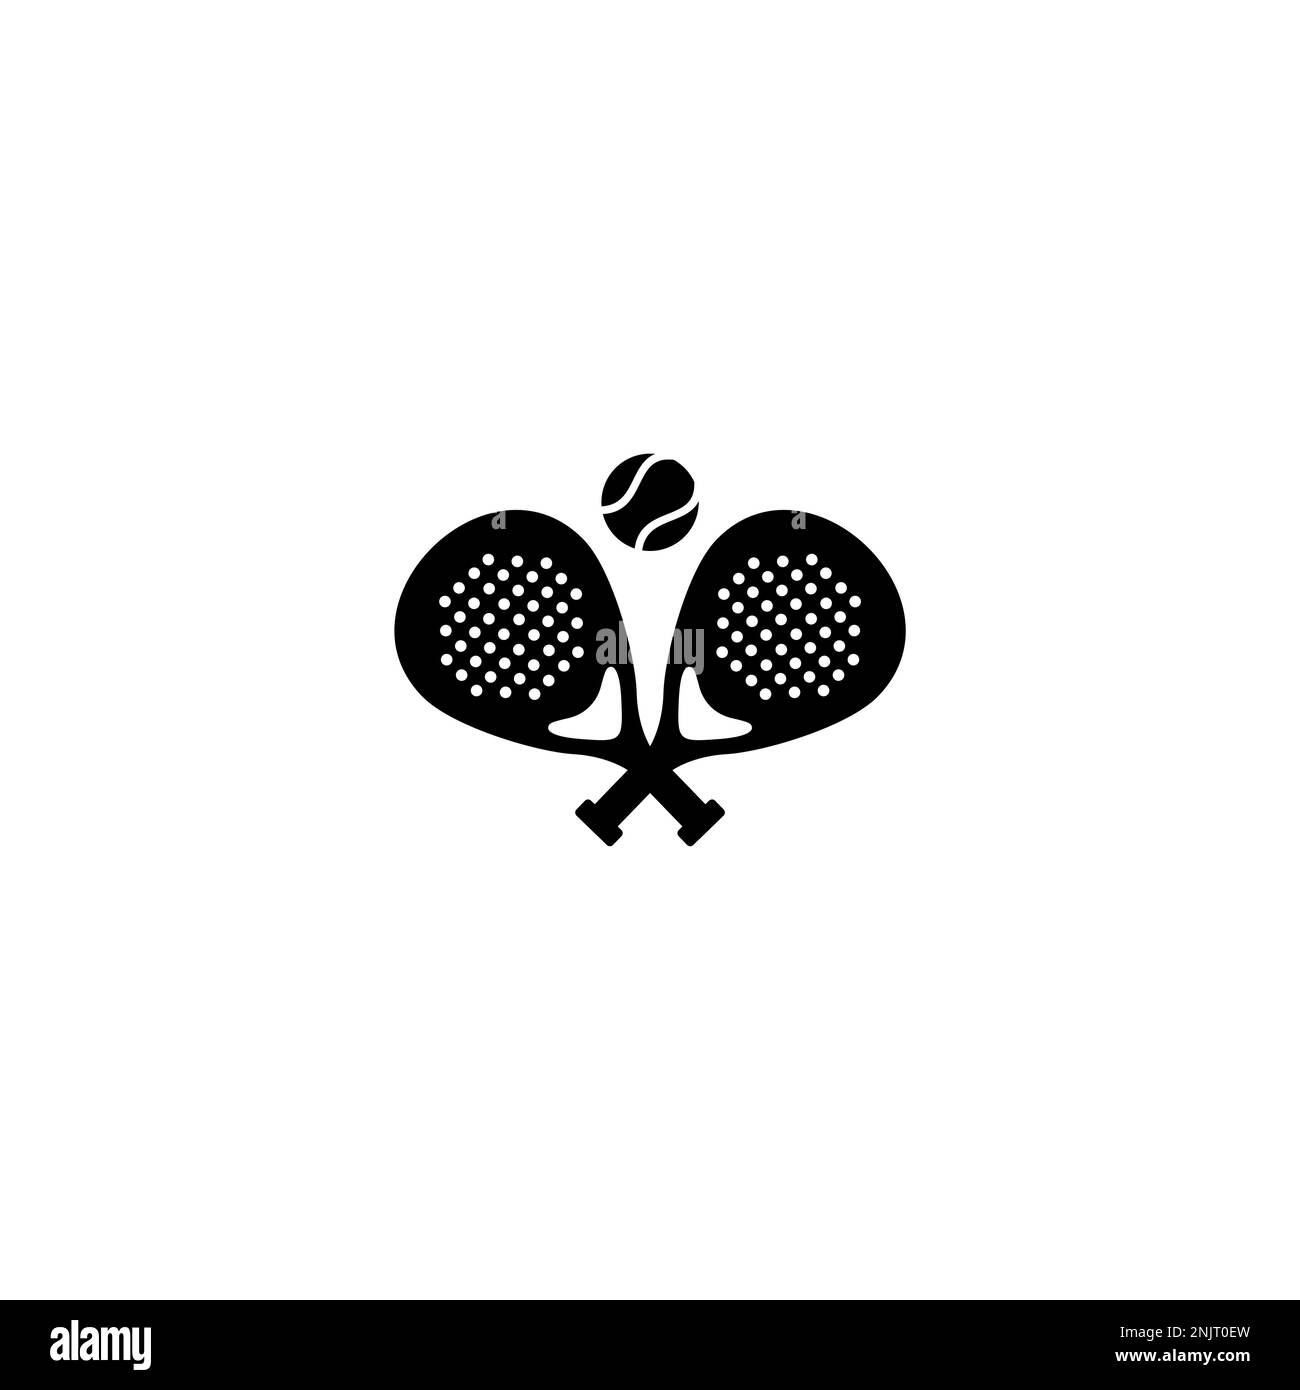 Logo Padle tennis. logo de la paquette et de la balle, vecteur d'icône sur fond blanc Illustration de Vecteur